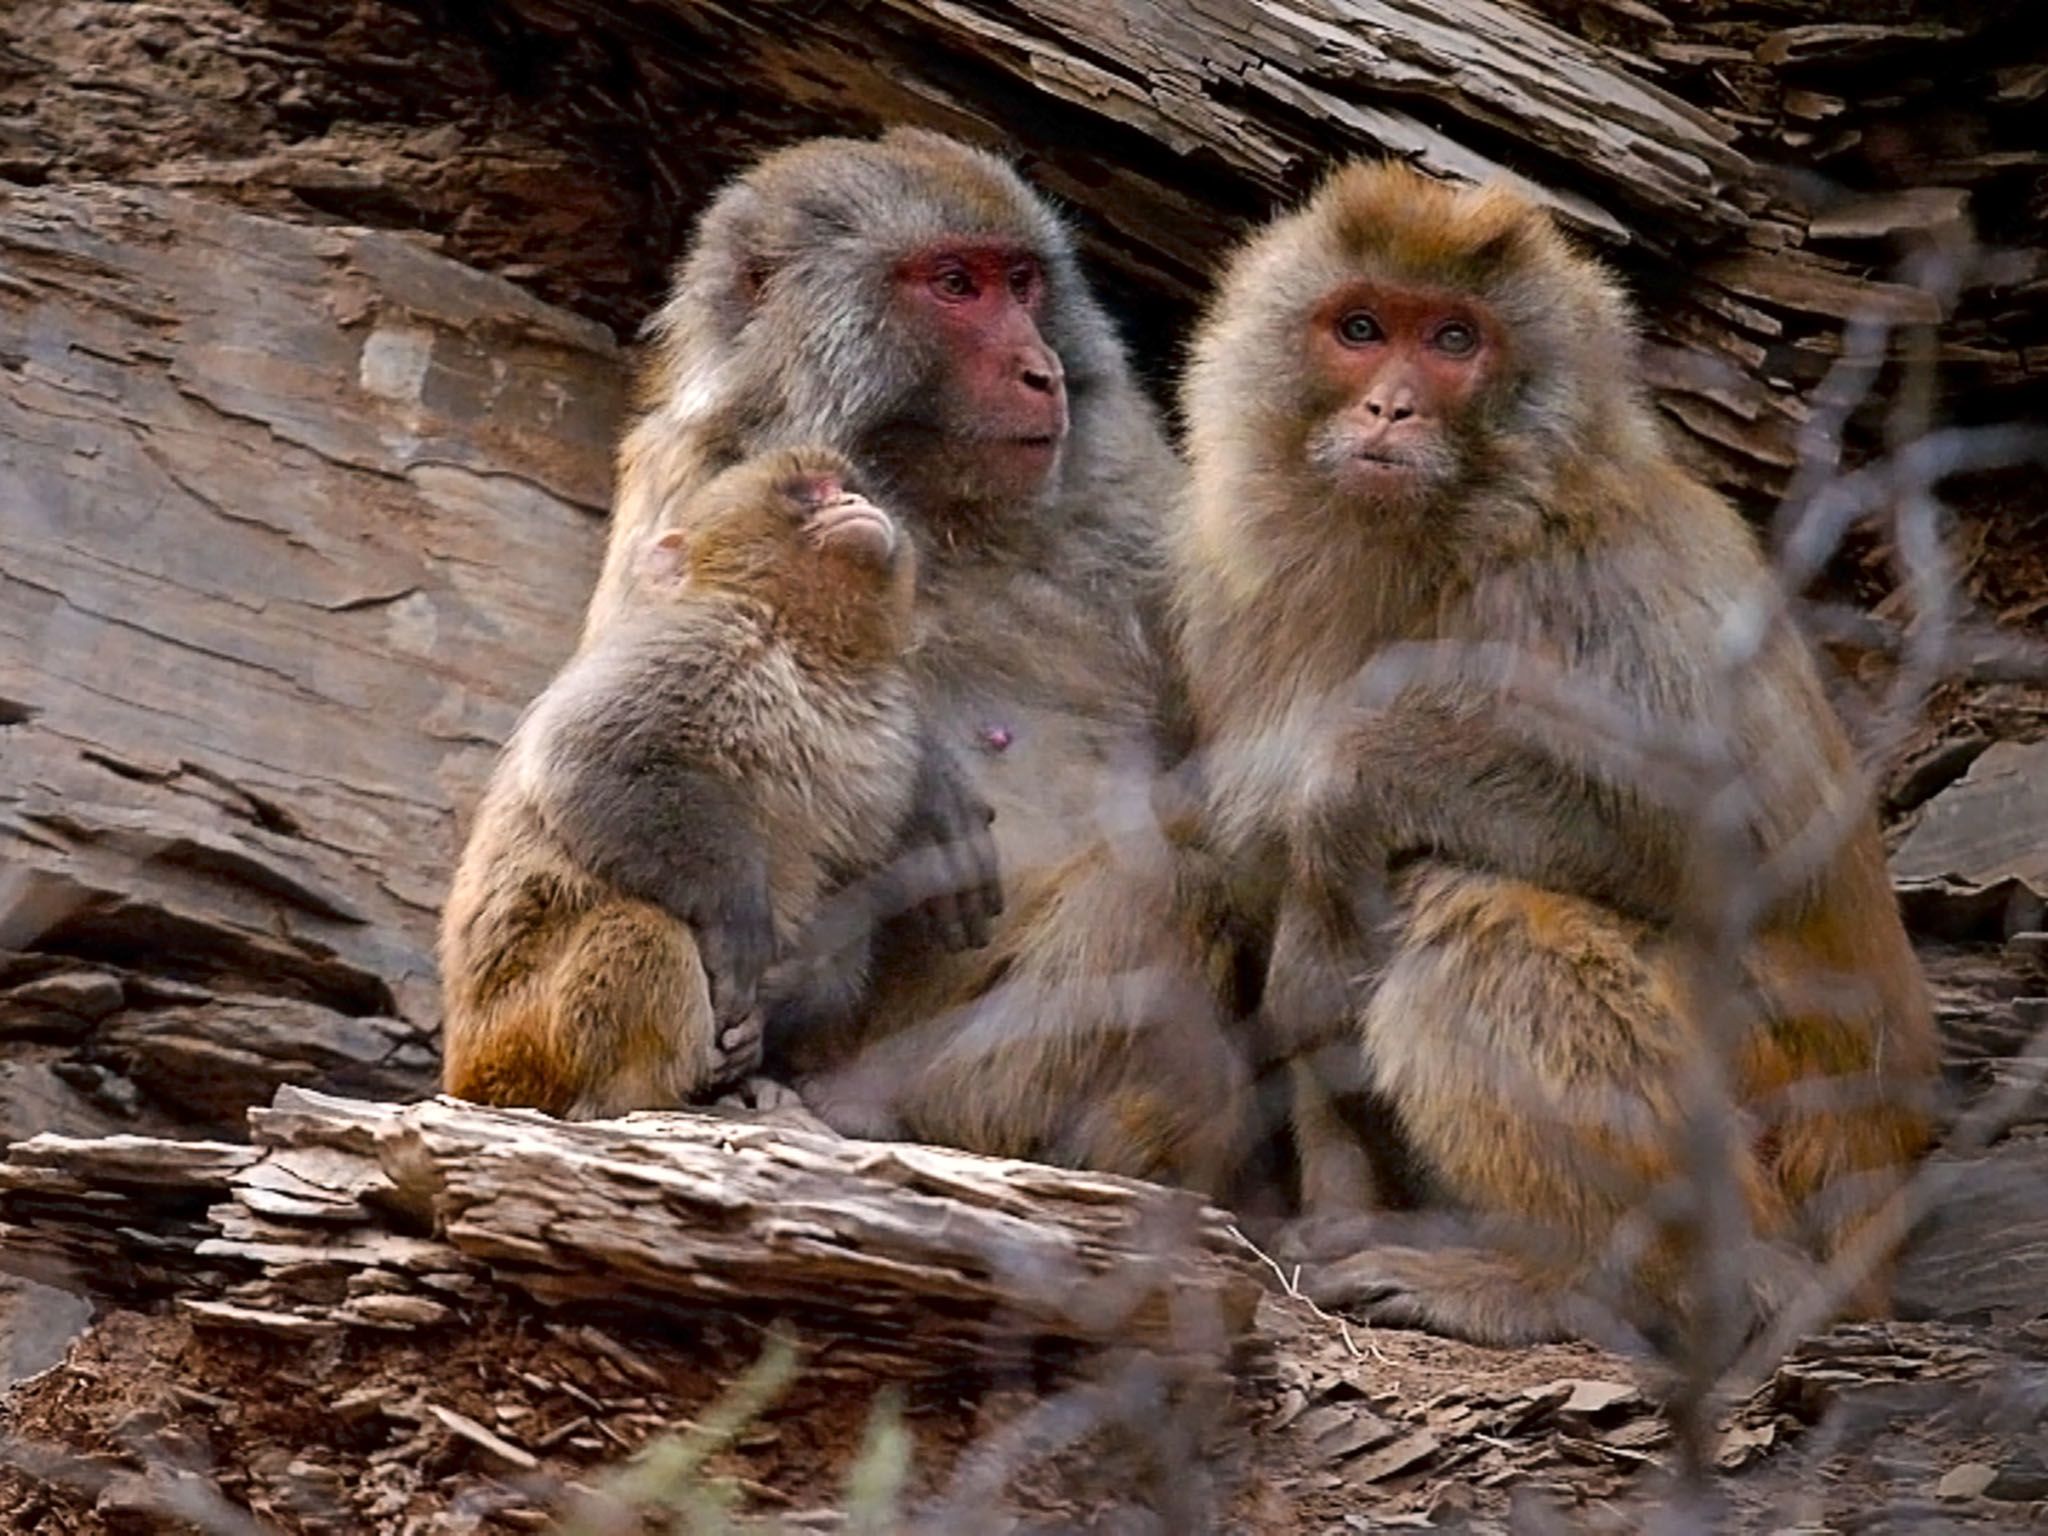 Pequeños monos en China. Imagen de NatGeoWILD [Foto del día - agosto 2016]